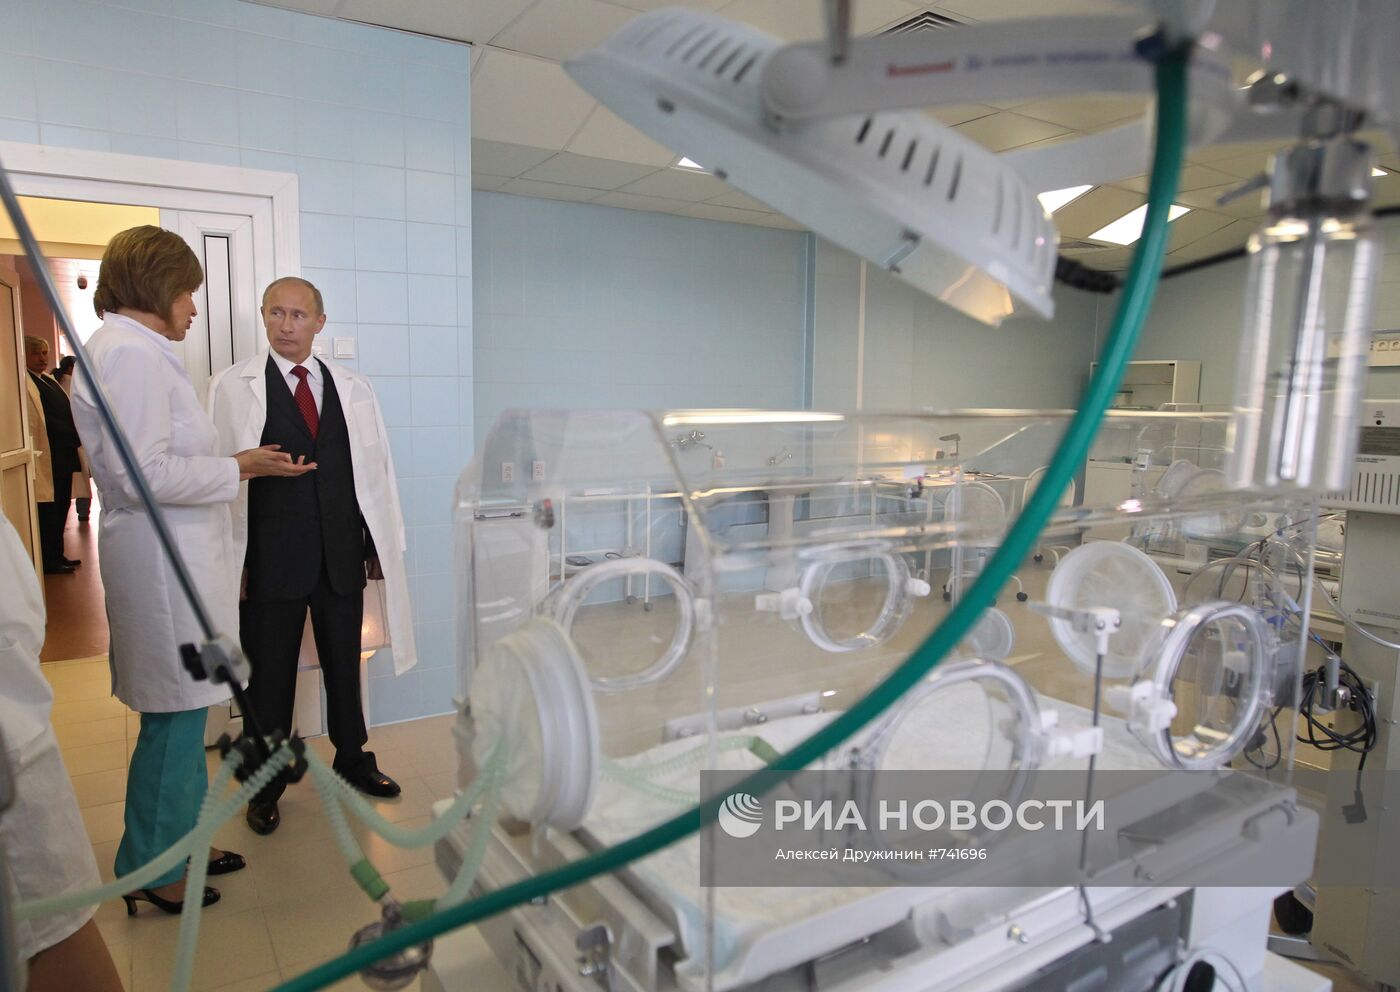 Владимир Путин посетил перинатальный центр в Твери